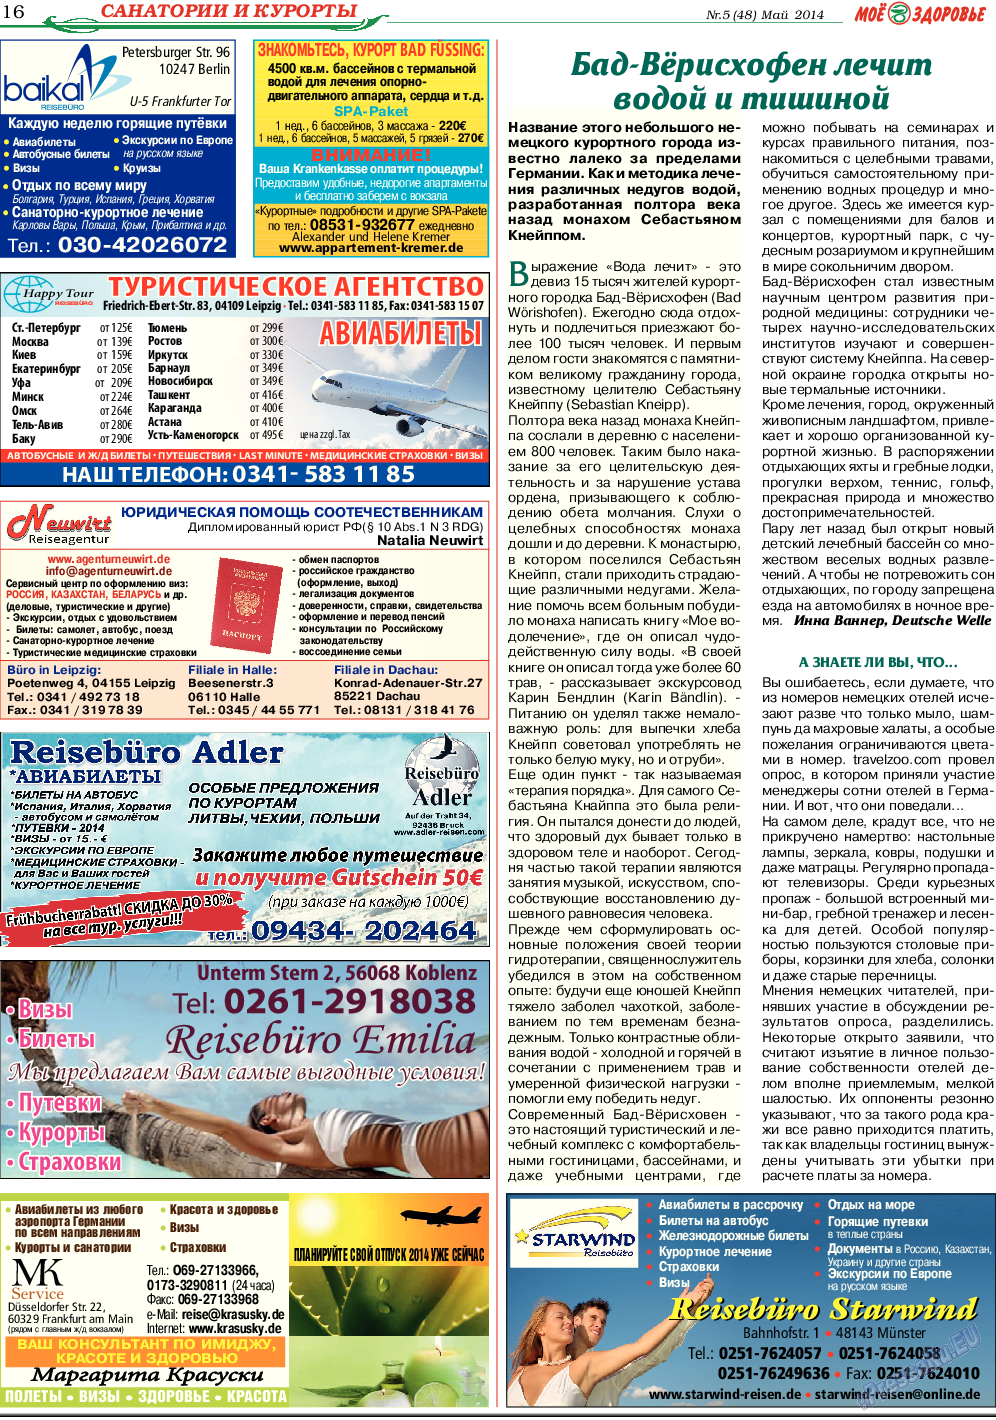 Кругозор, газета. 2014 №5 стр.16